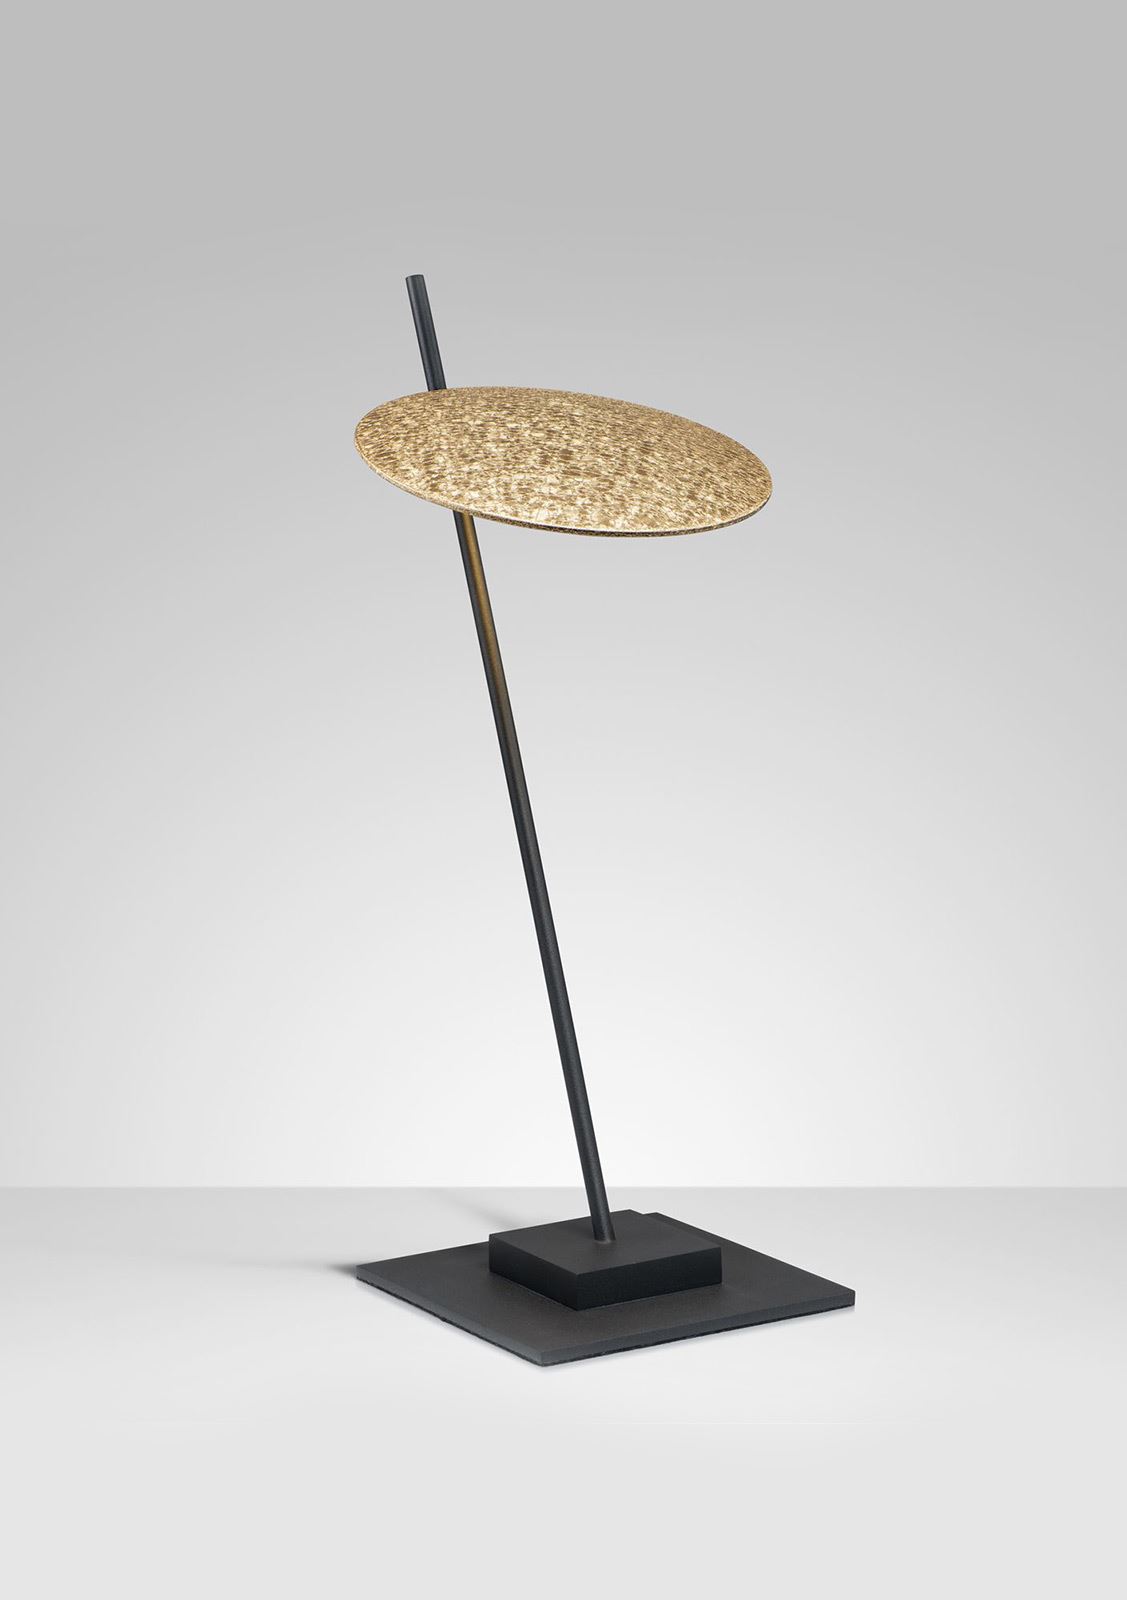 גופי תאורה בקטגוריית: מנורות שולחן  ,שם המוצר: SUPER NOVA